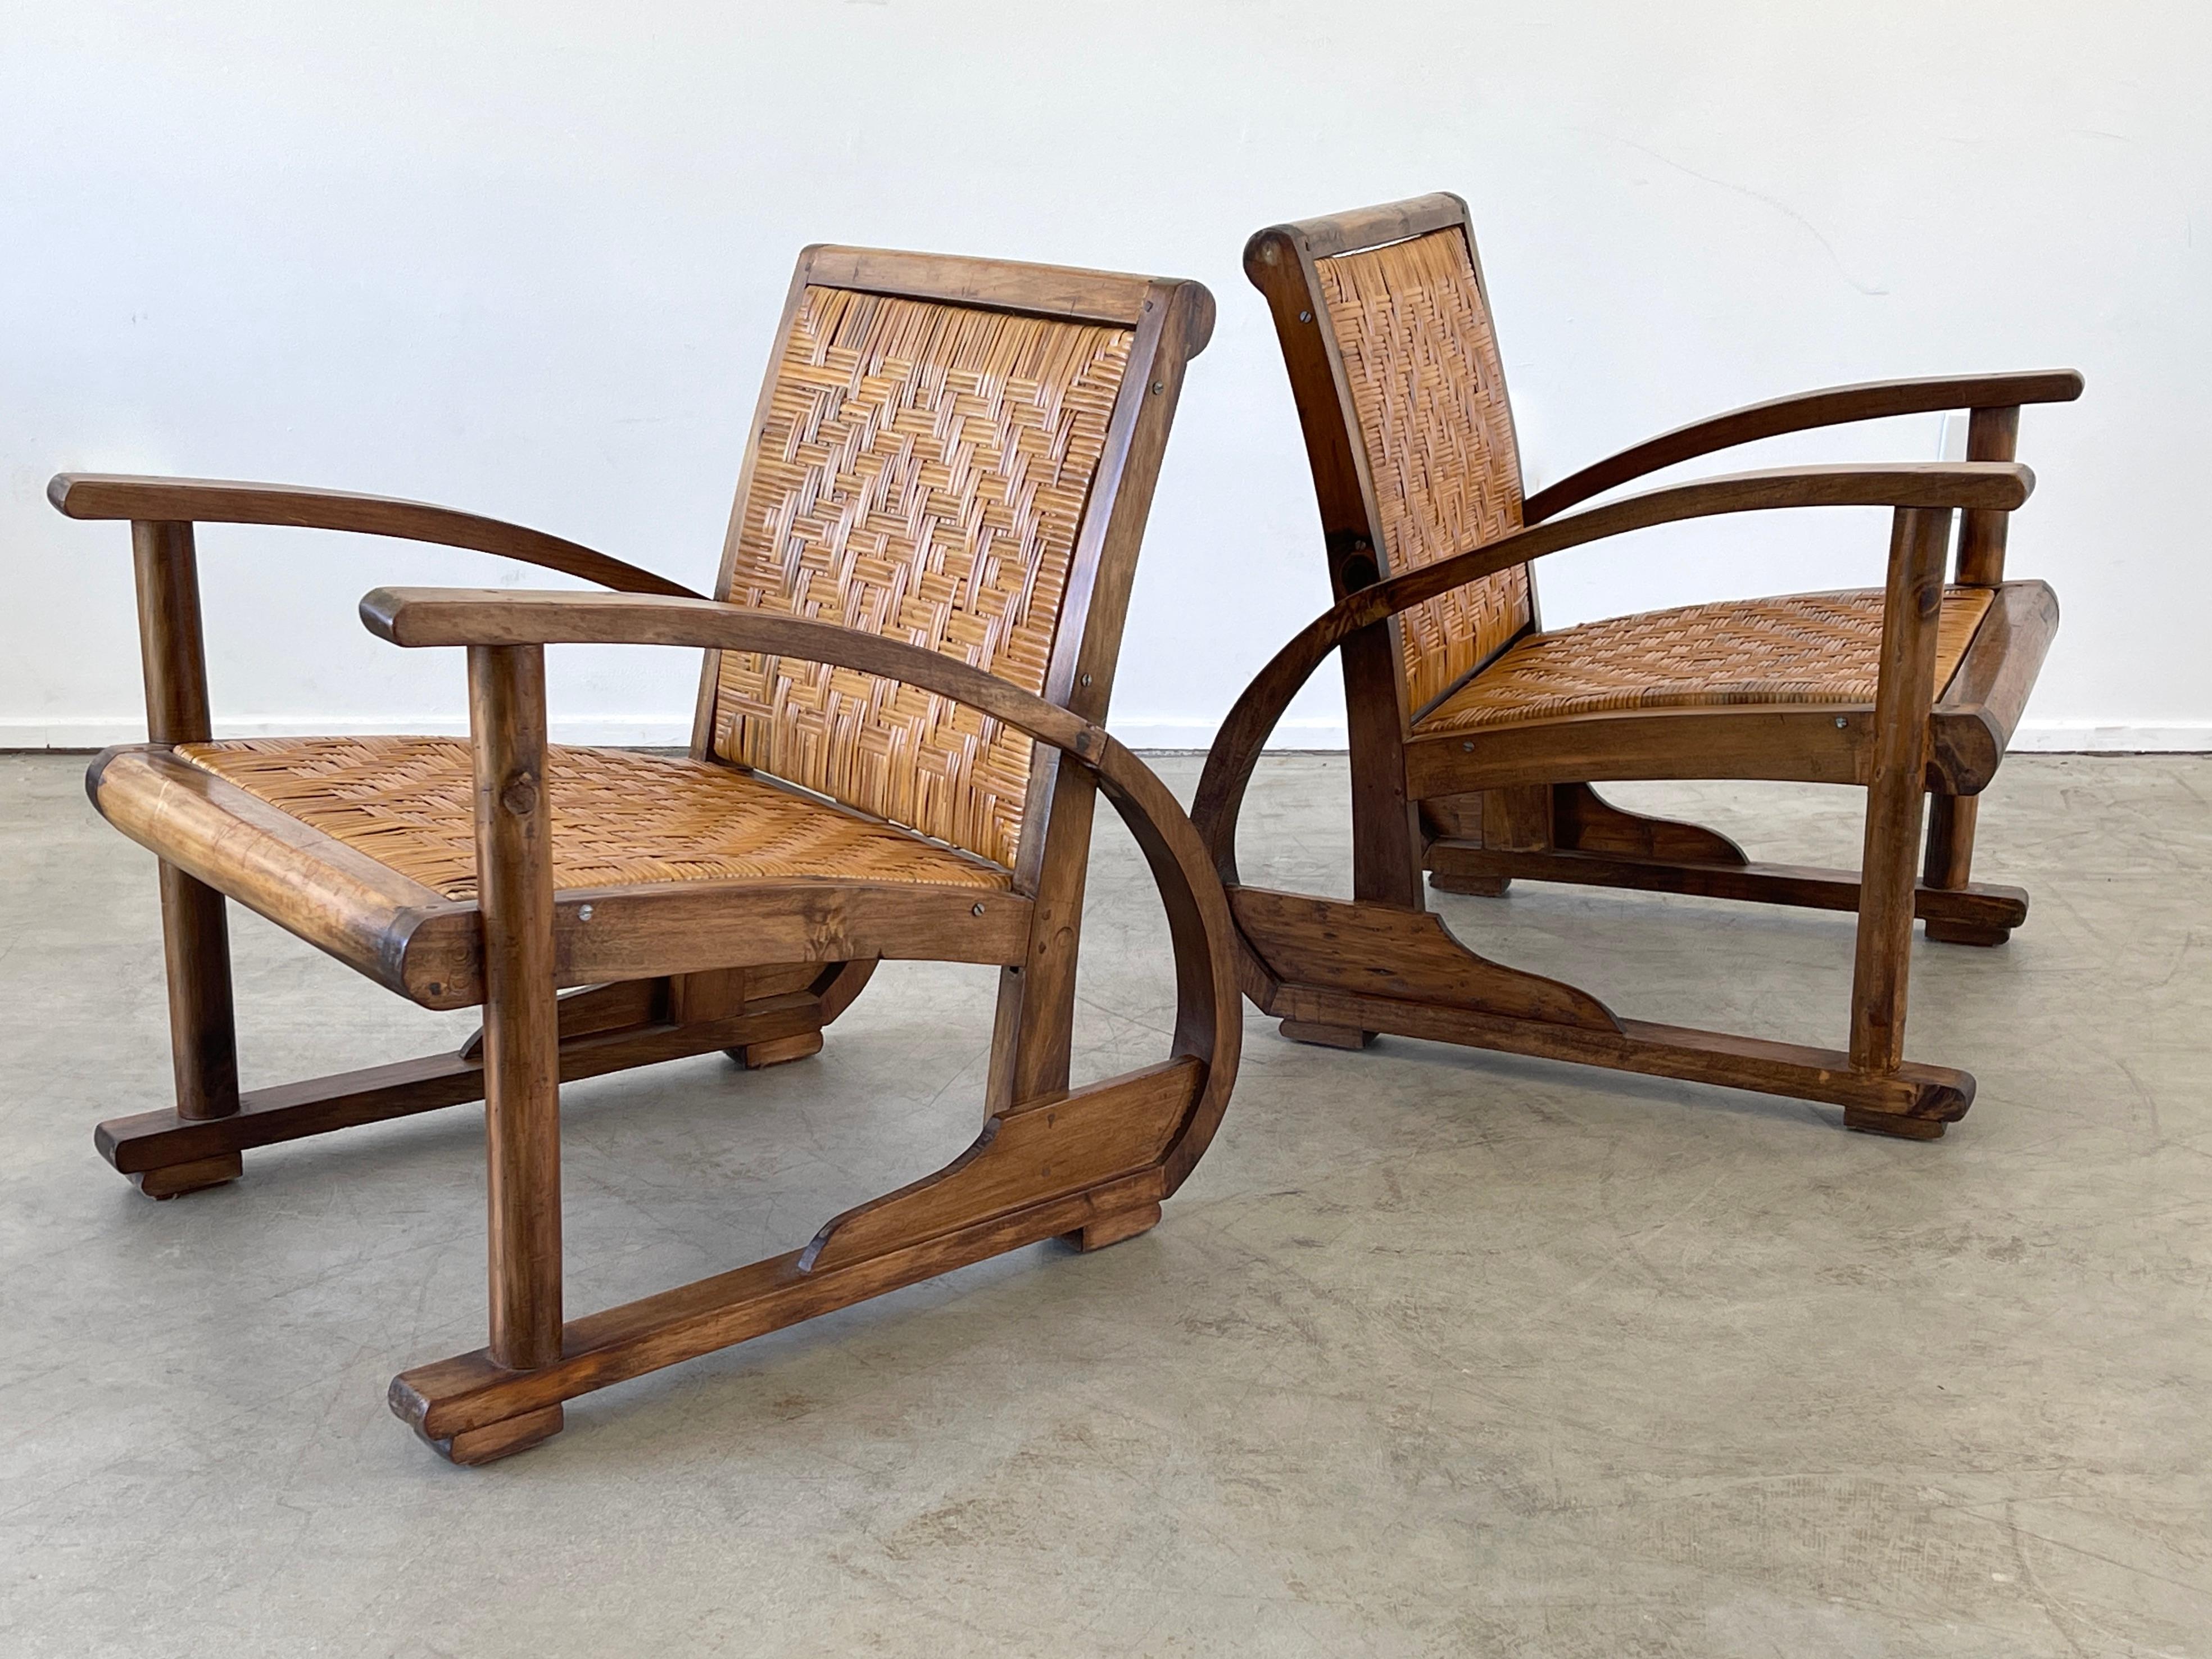 Paire de chaises de style Art déco français des années 1940 avec des cadres en chêne courbés et des sièges et dossiers en rotin. 
Grande forme sculpturale et patine.